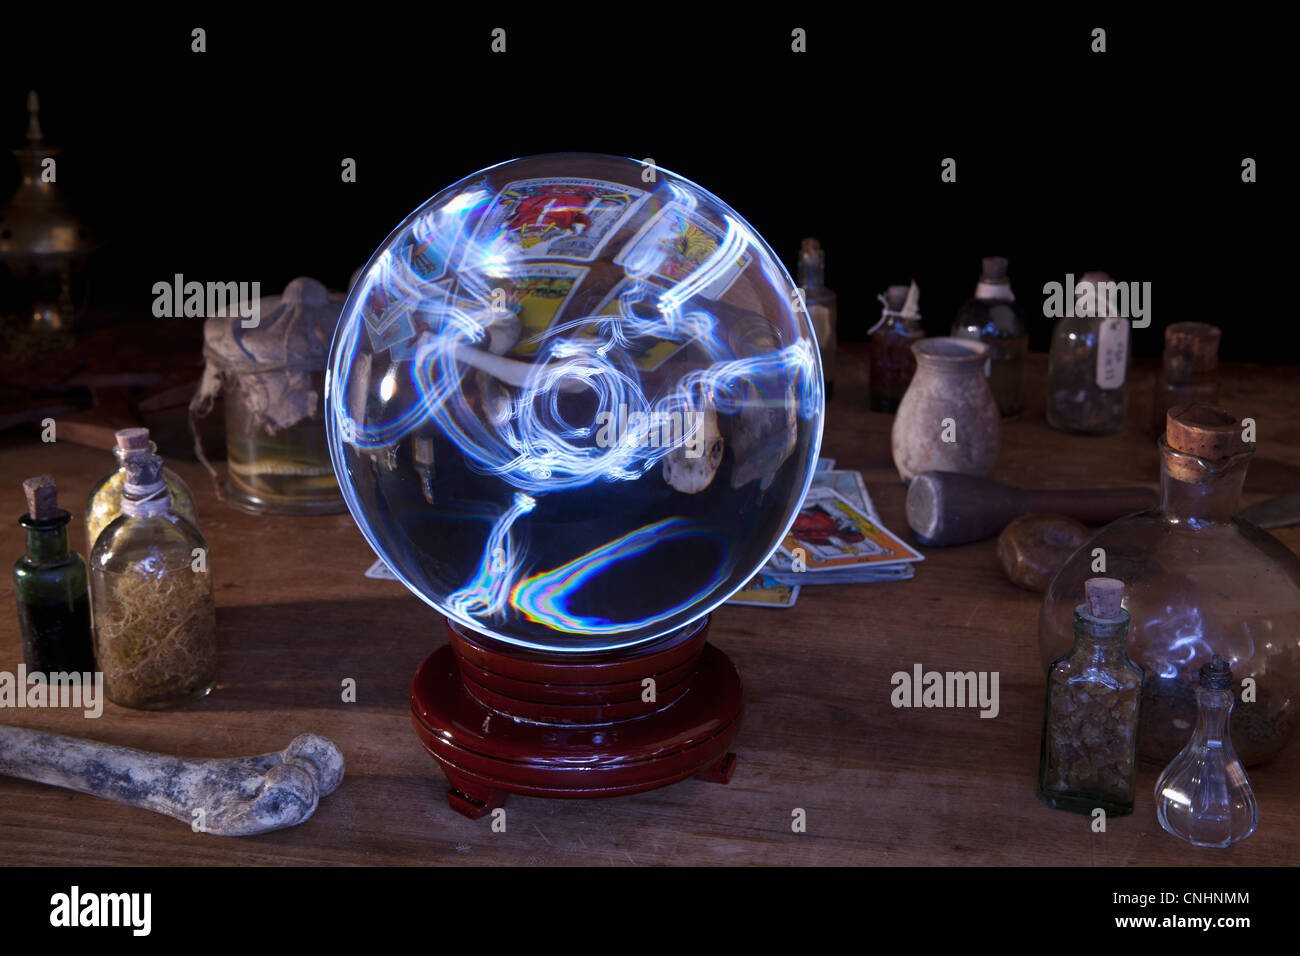 Une boule de cristal au milieu d'bouteilles et cartes de tarot Banque D'Images